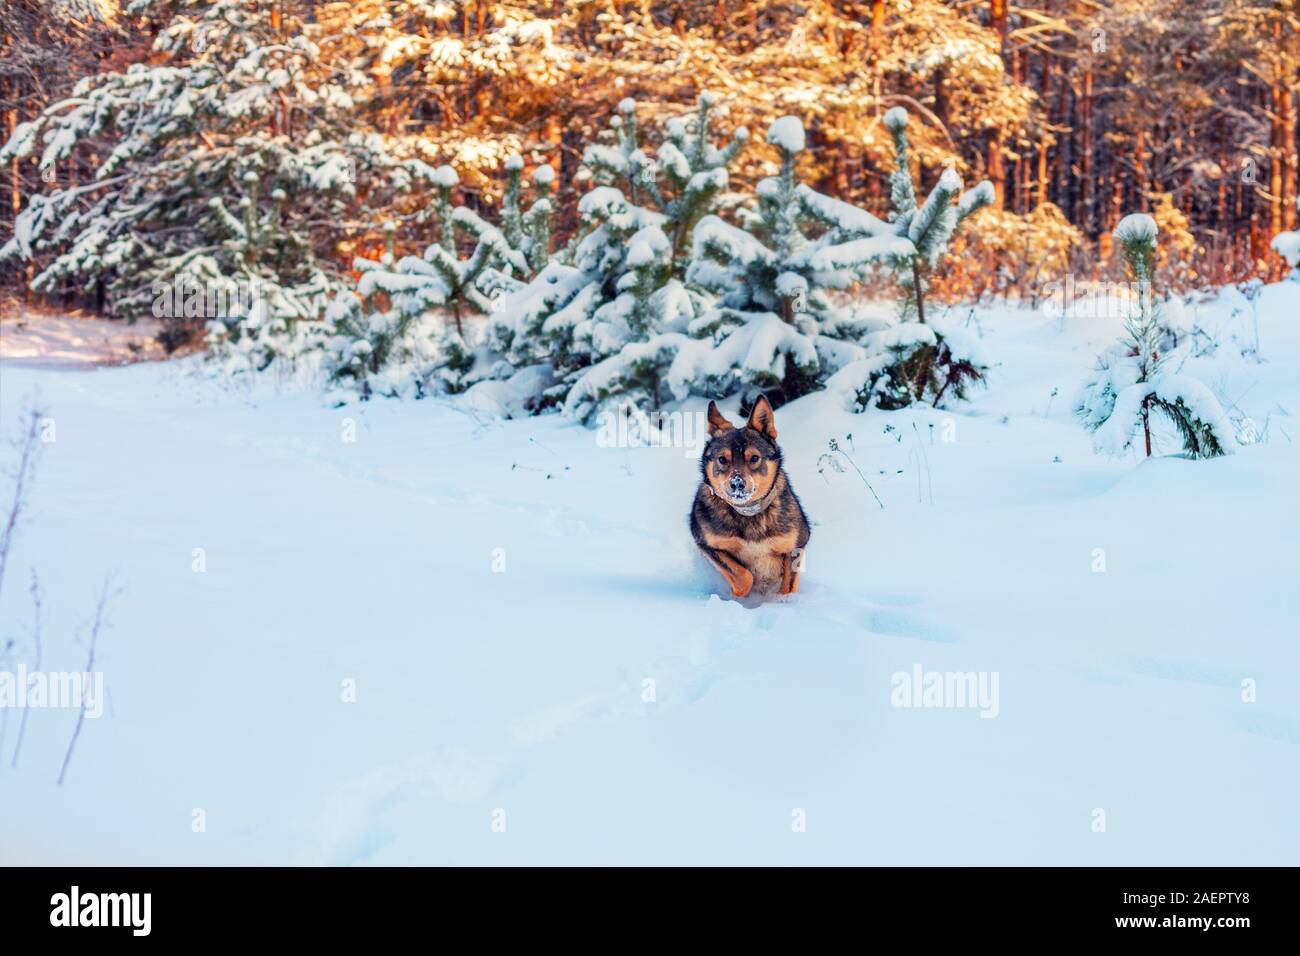 Hybride loup chien court dans la neige profonde dans une pinède en hiver neige Banque D'Images